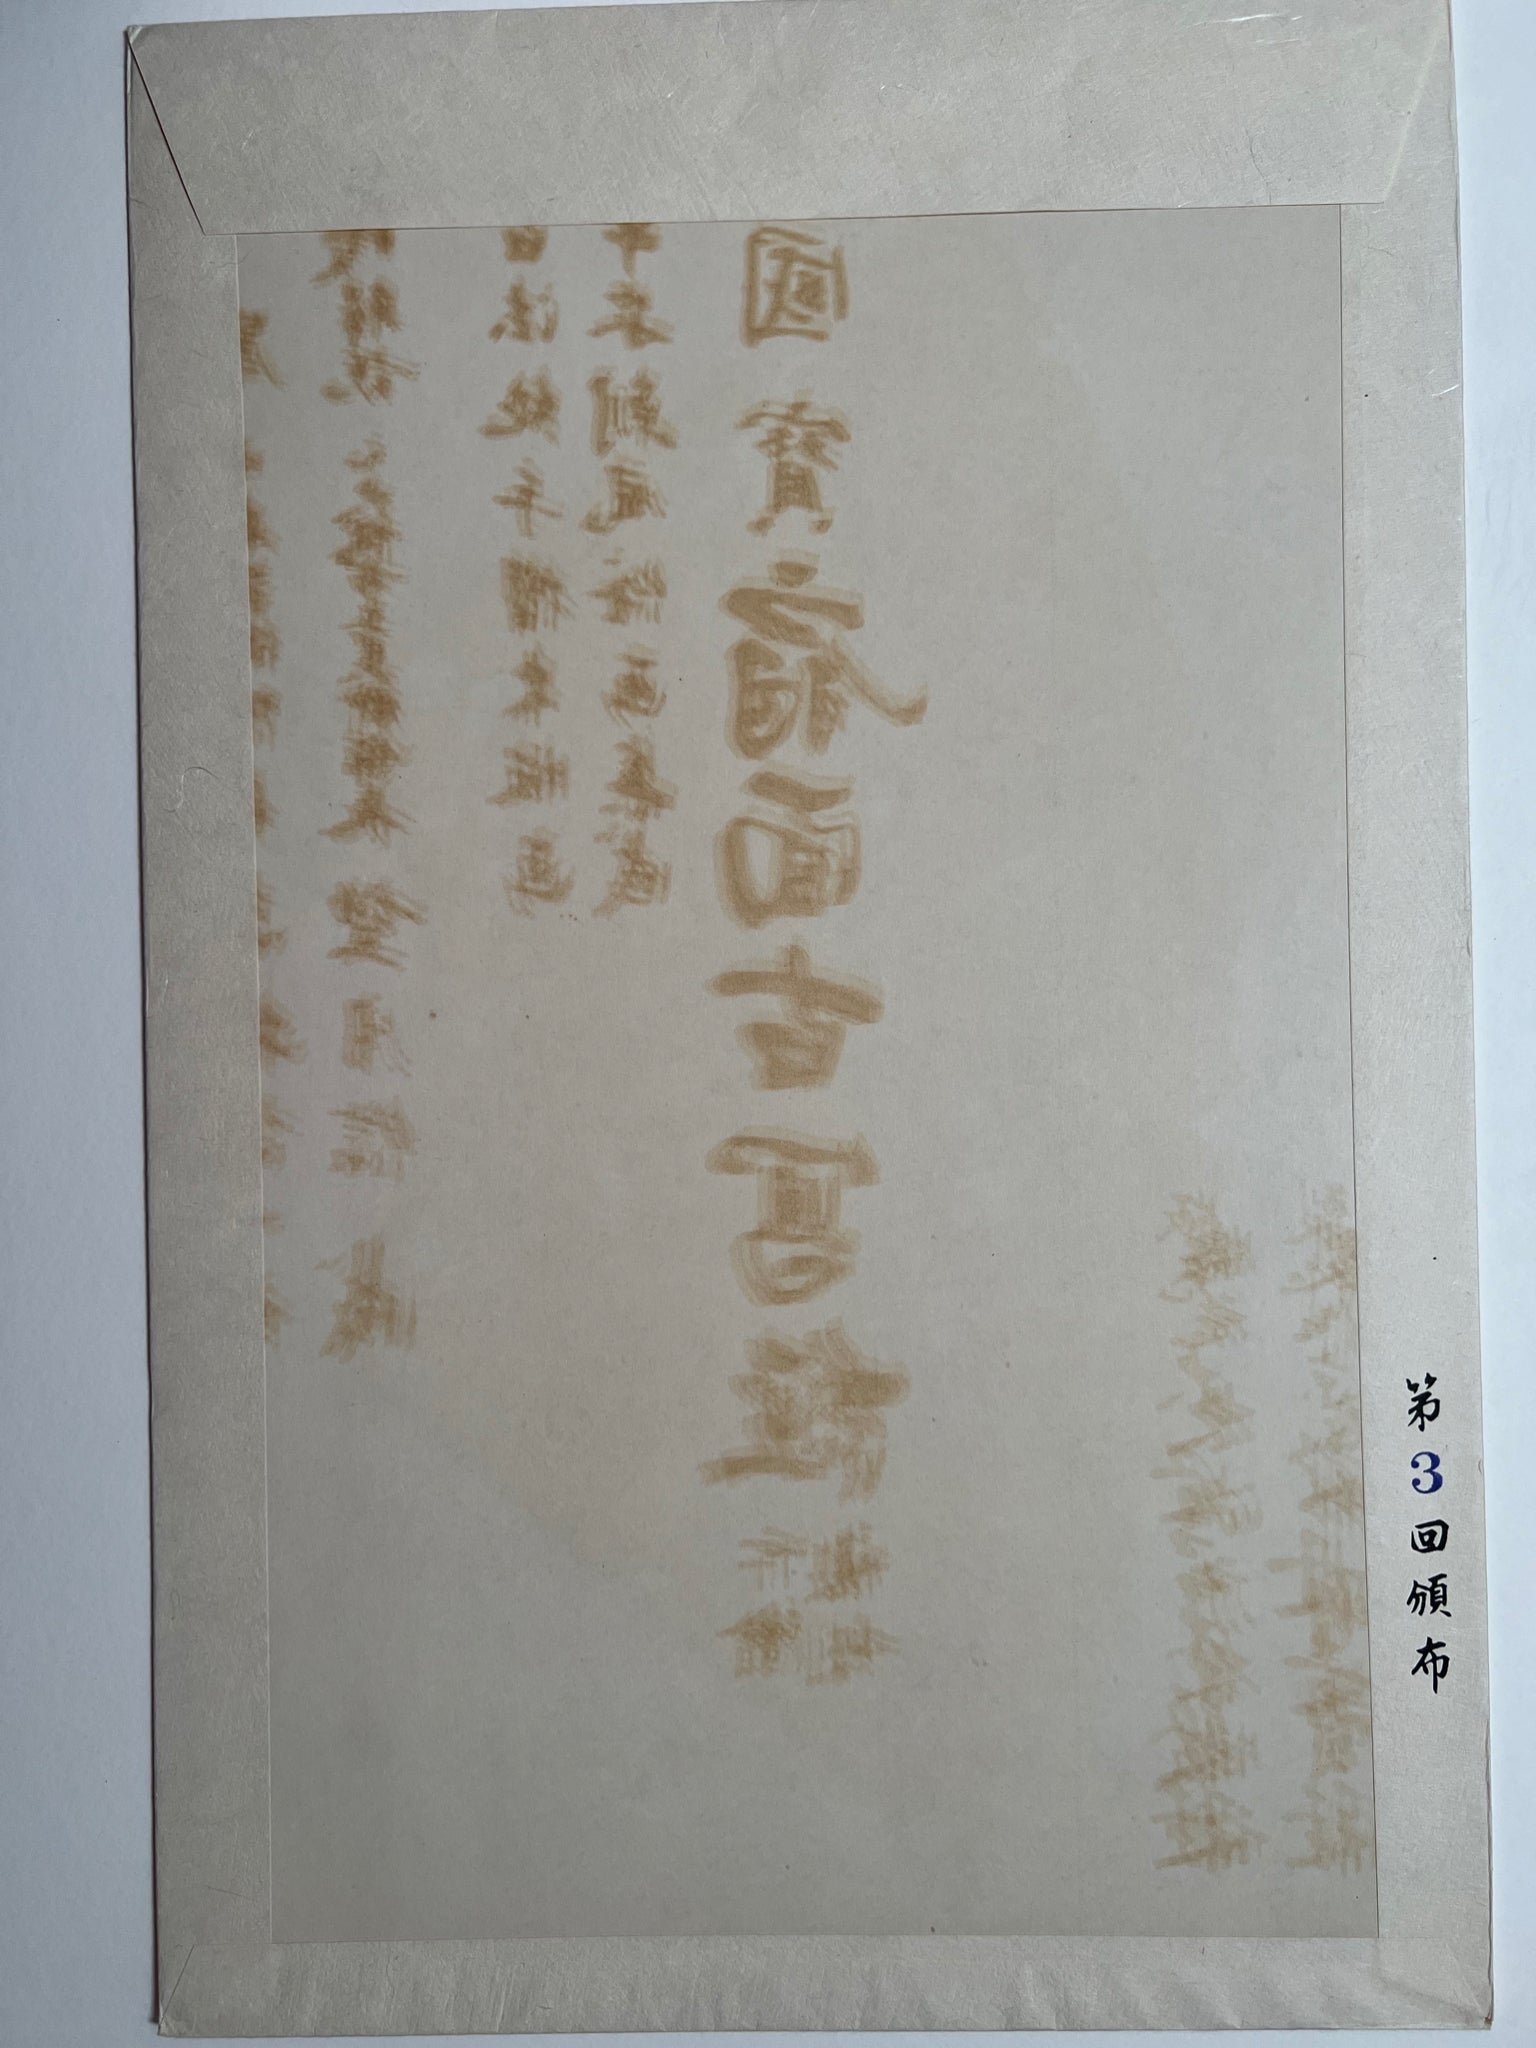 Sutra du lotus n°3, dos de la pochette avec caractères japonais.